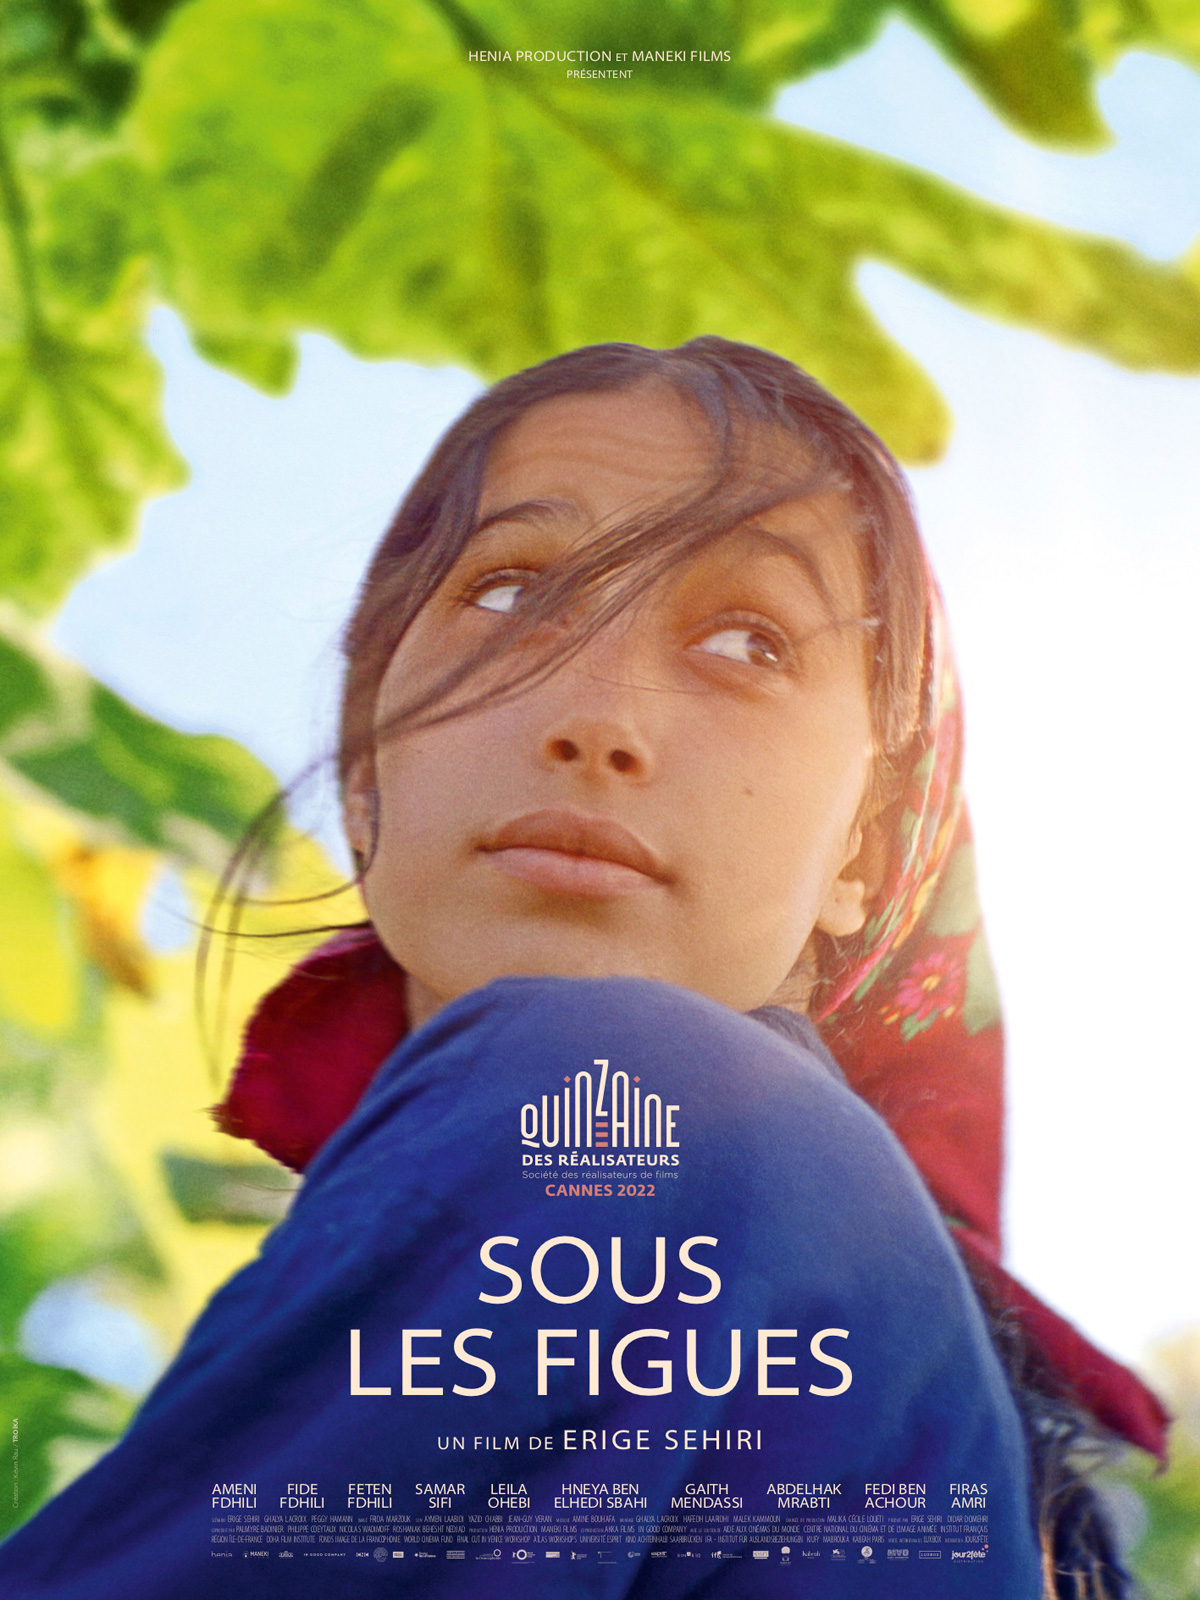 Le film « Sous les figues » de la réalisatrice franco-tunisienne Erige Sehiri. DR